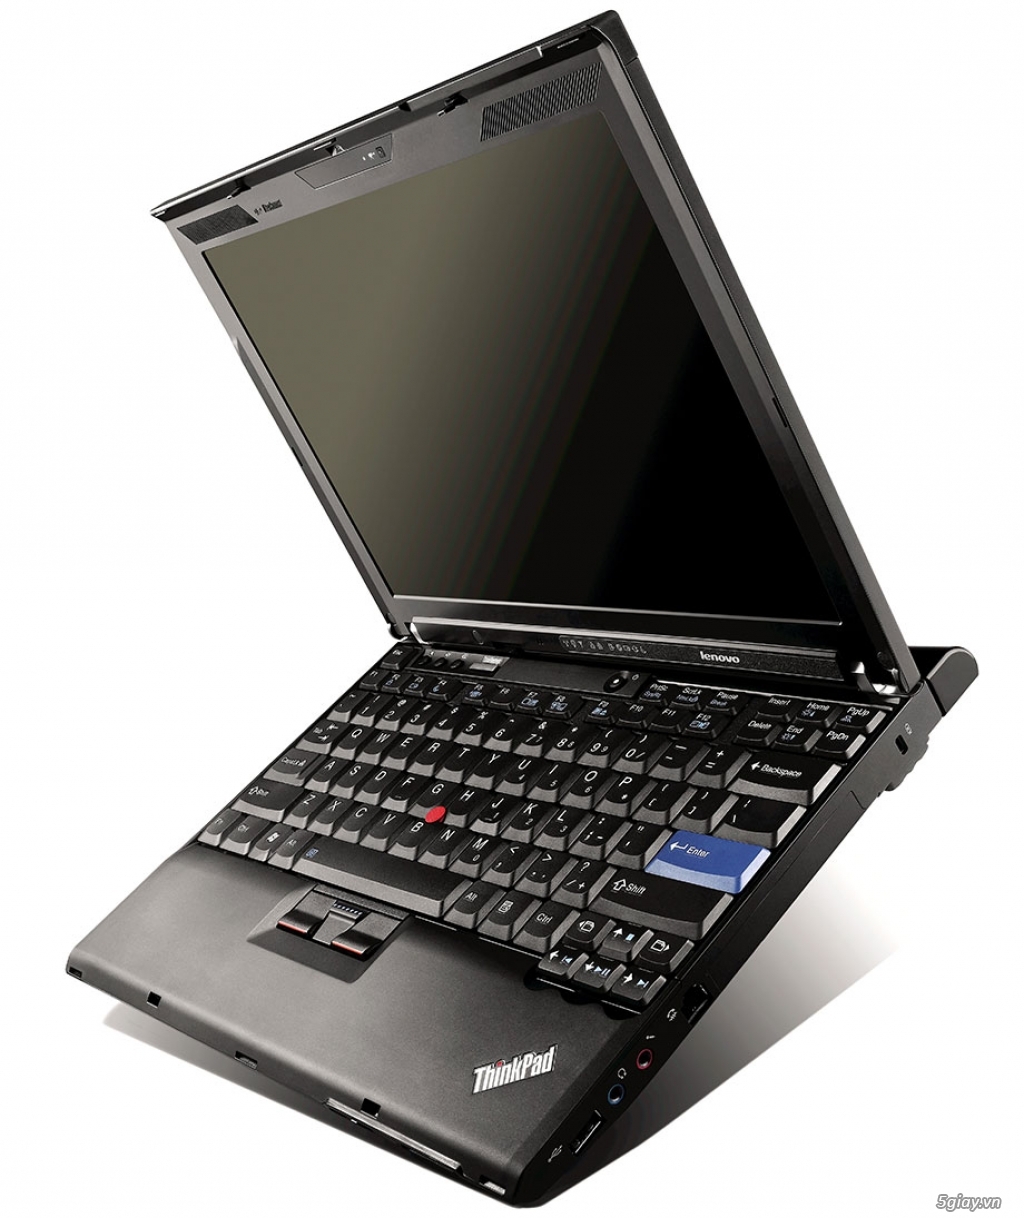 Thanh lí nhanh con Lenovo Thinkpad X200S mỏng, còn mới KENG - 2